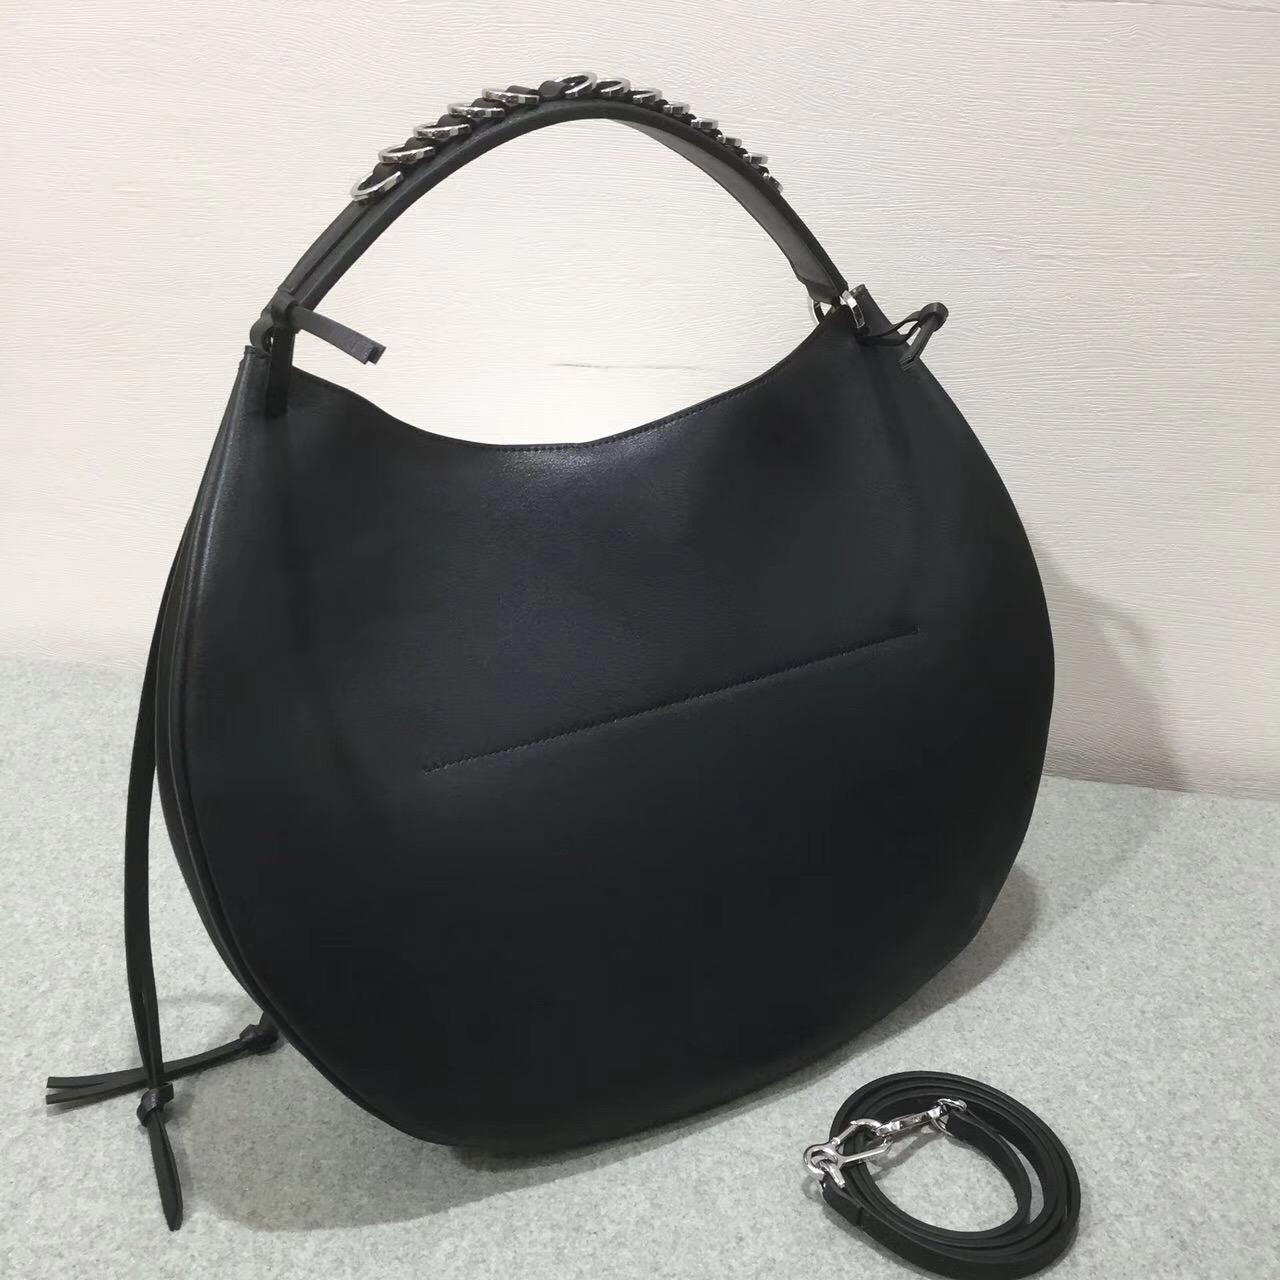 羅意威 Loewe Fortune hobo bag系列限量版半月包 黑色進口細紋小牛皮